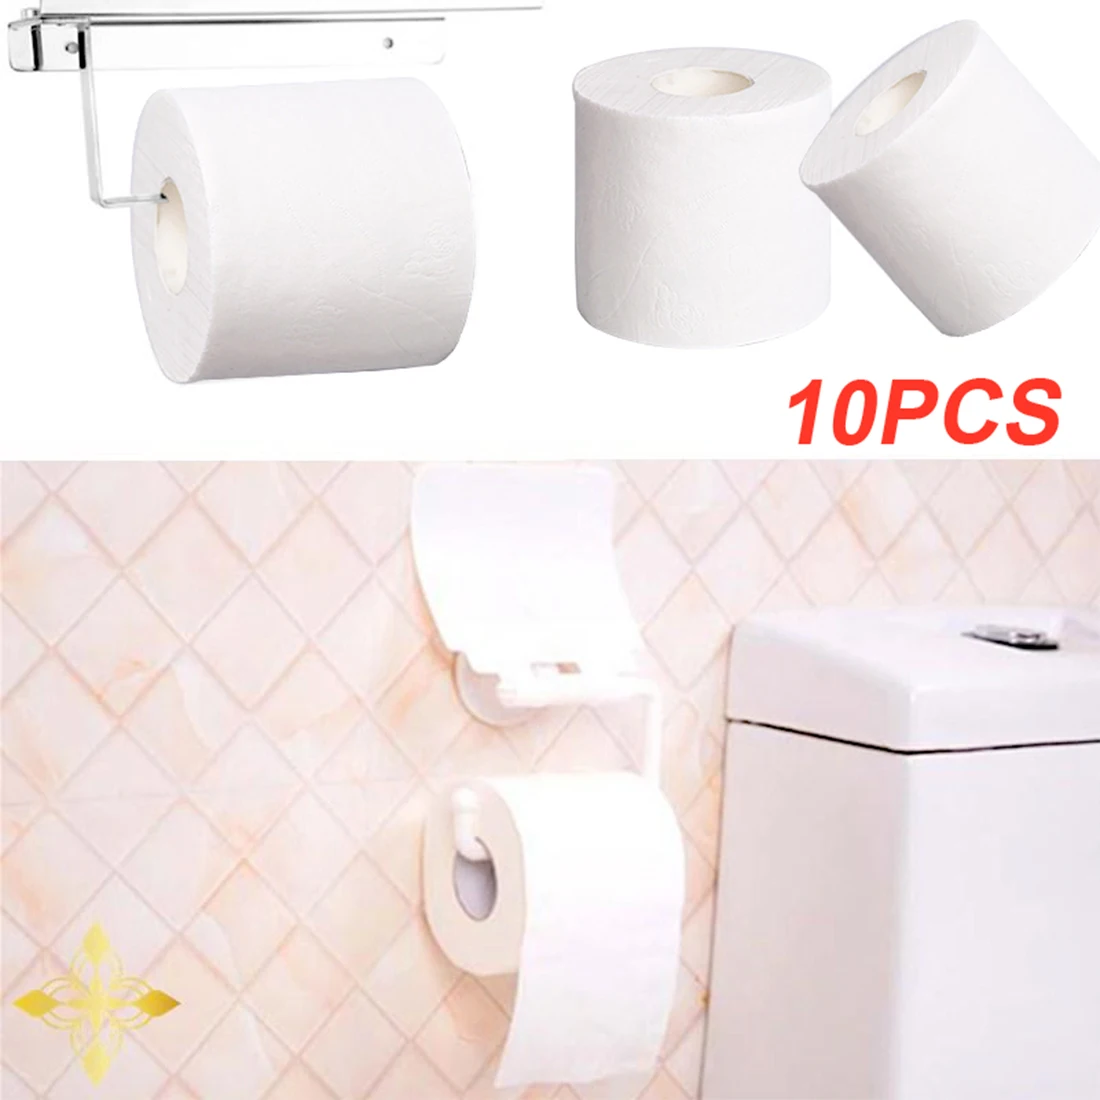 

Туалетная бумага 10 рулонов для домашней ванной рулон туалетной бумаги мягкая туалетная бумага безвредные для кожи бумажные полотенца аксе...